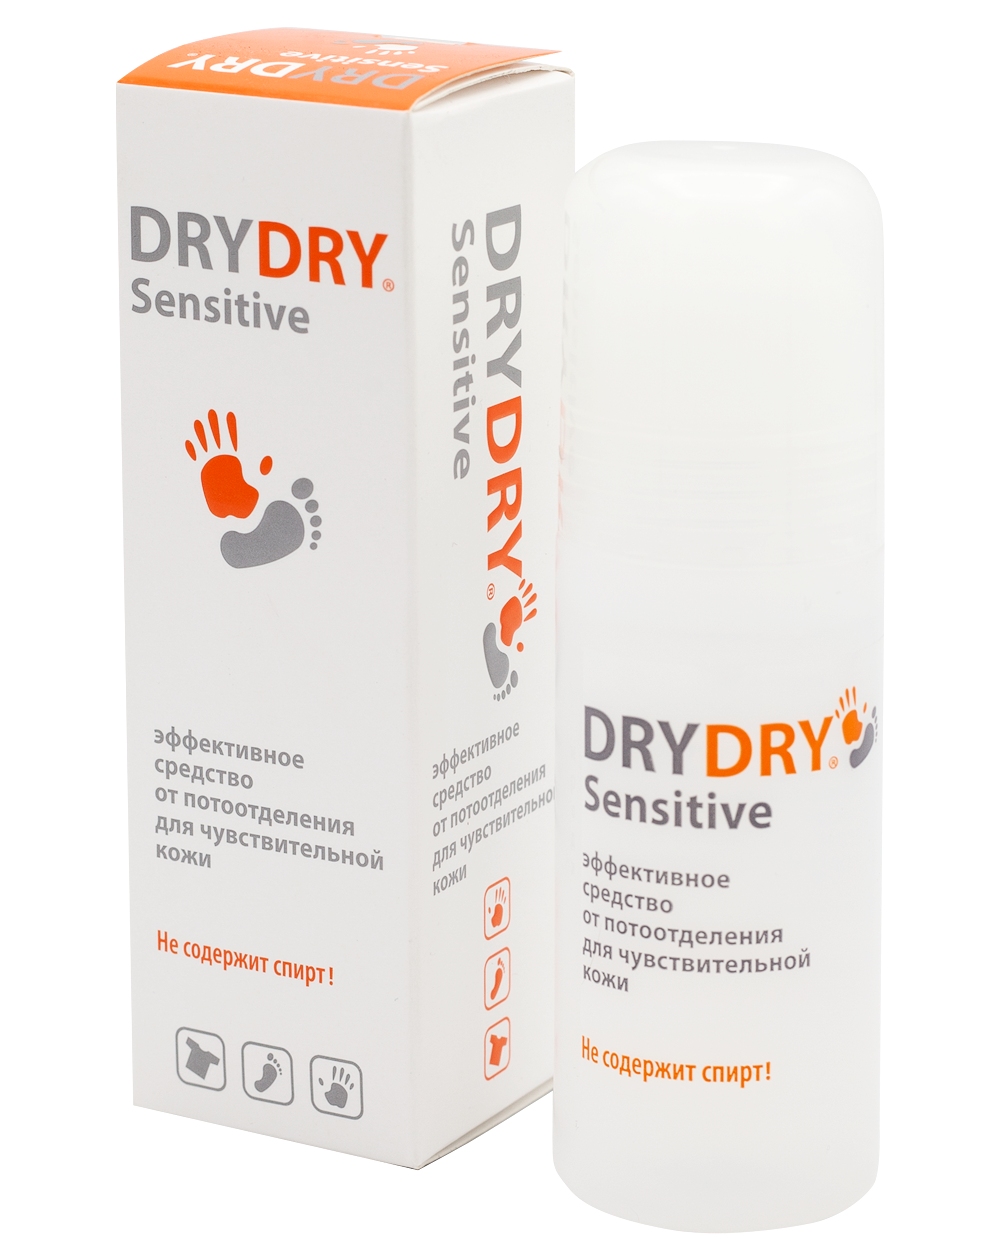 Драй драй Сенситив 50 мл. Dry Dry дезодорант для подмышек. Dry Dry sensitive дезодорант. Средства драй драй для подмышек. Эффективные средства от потливости